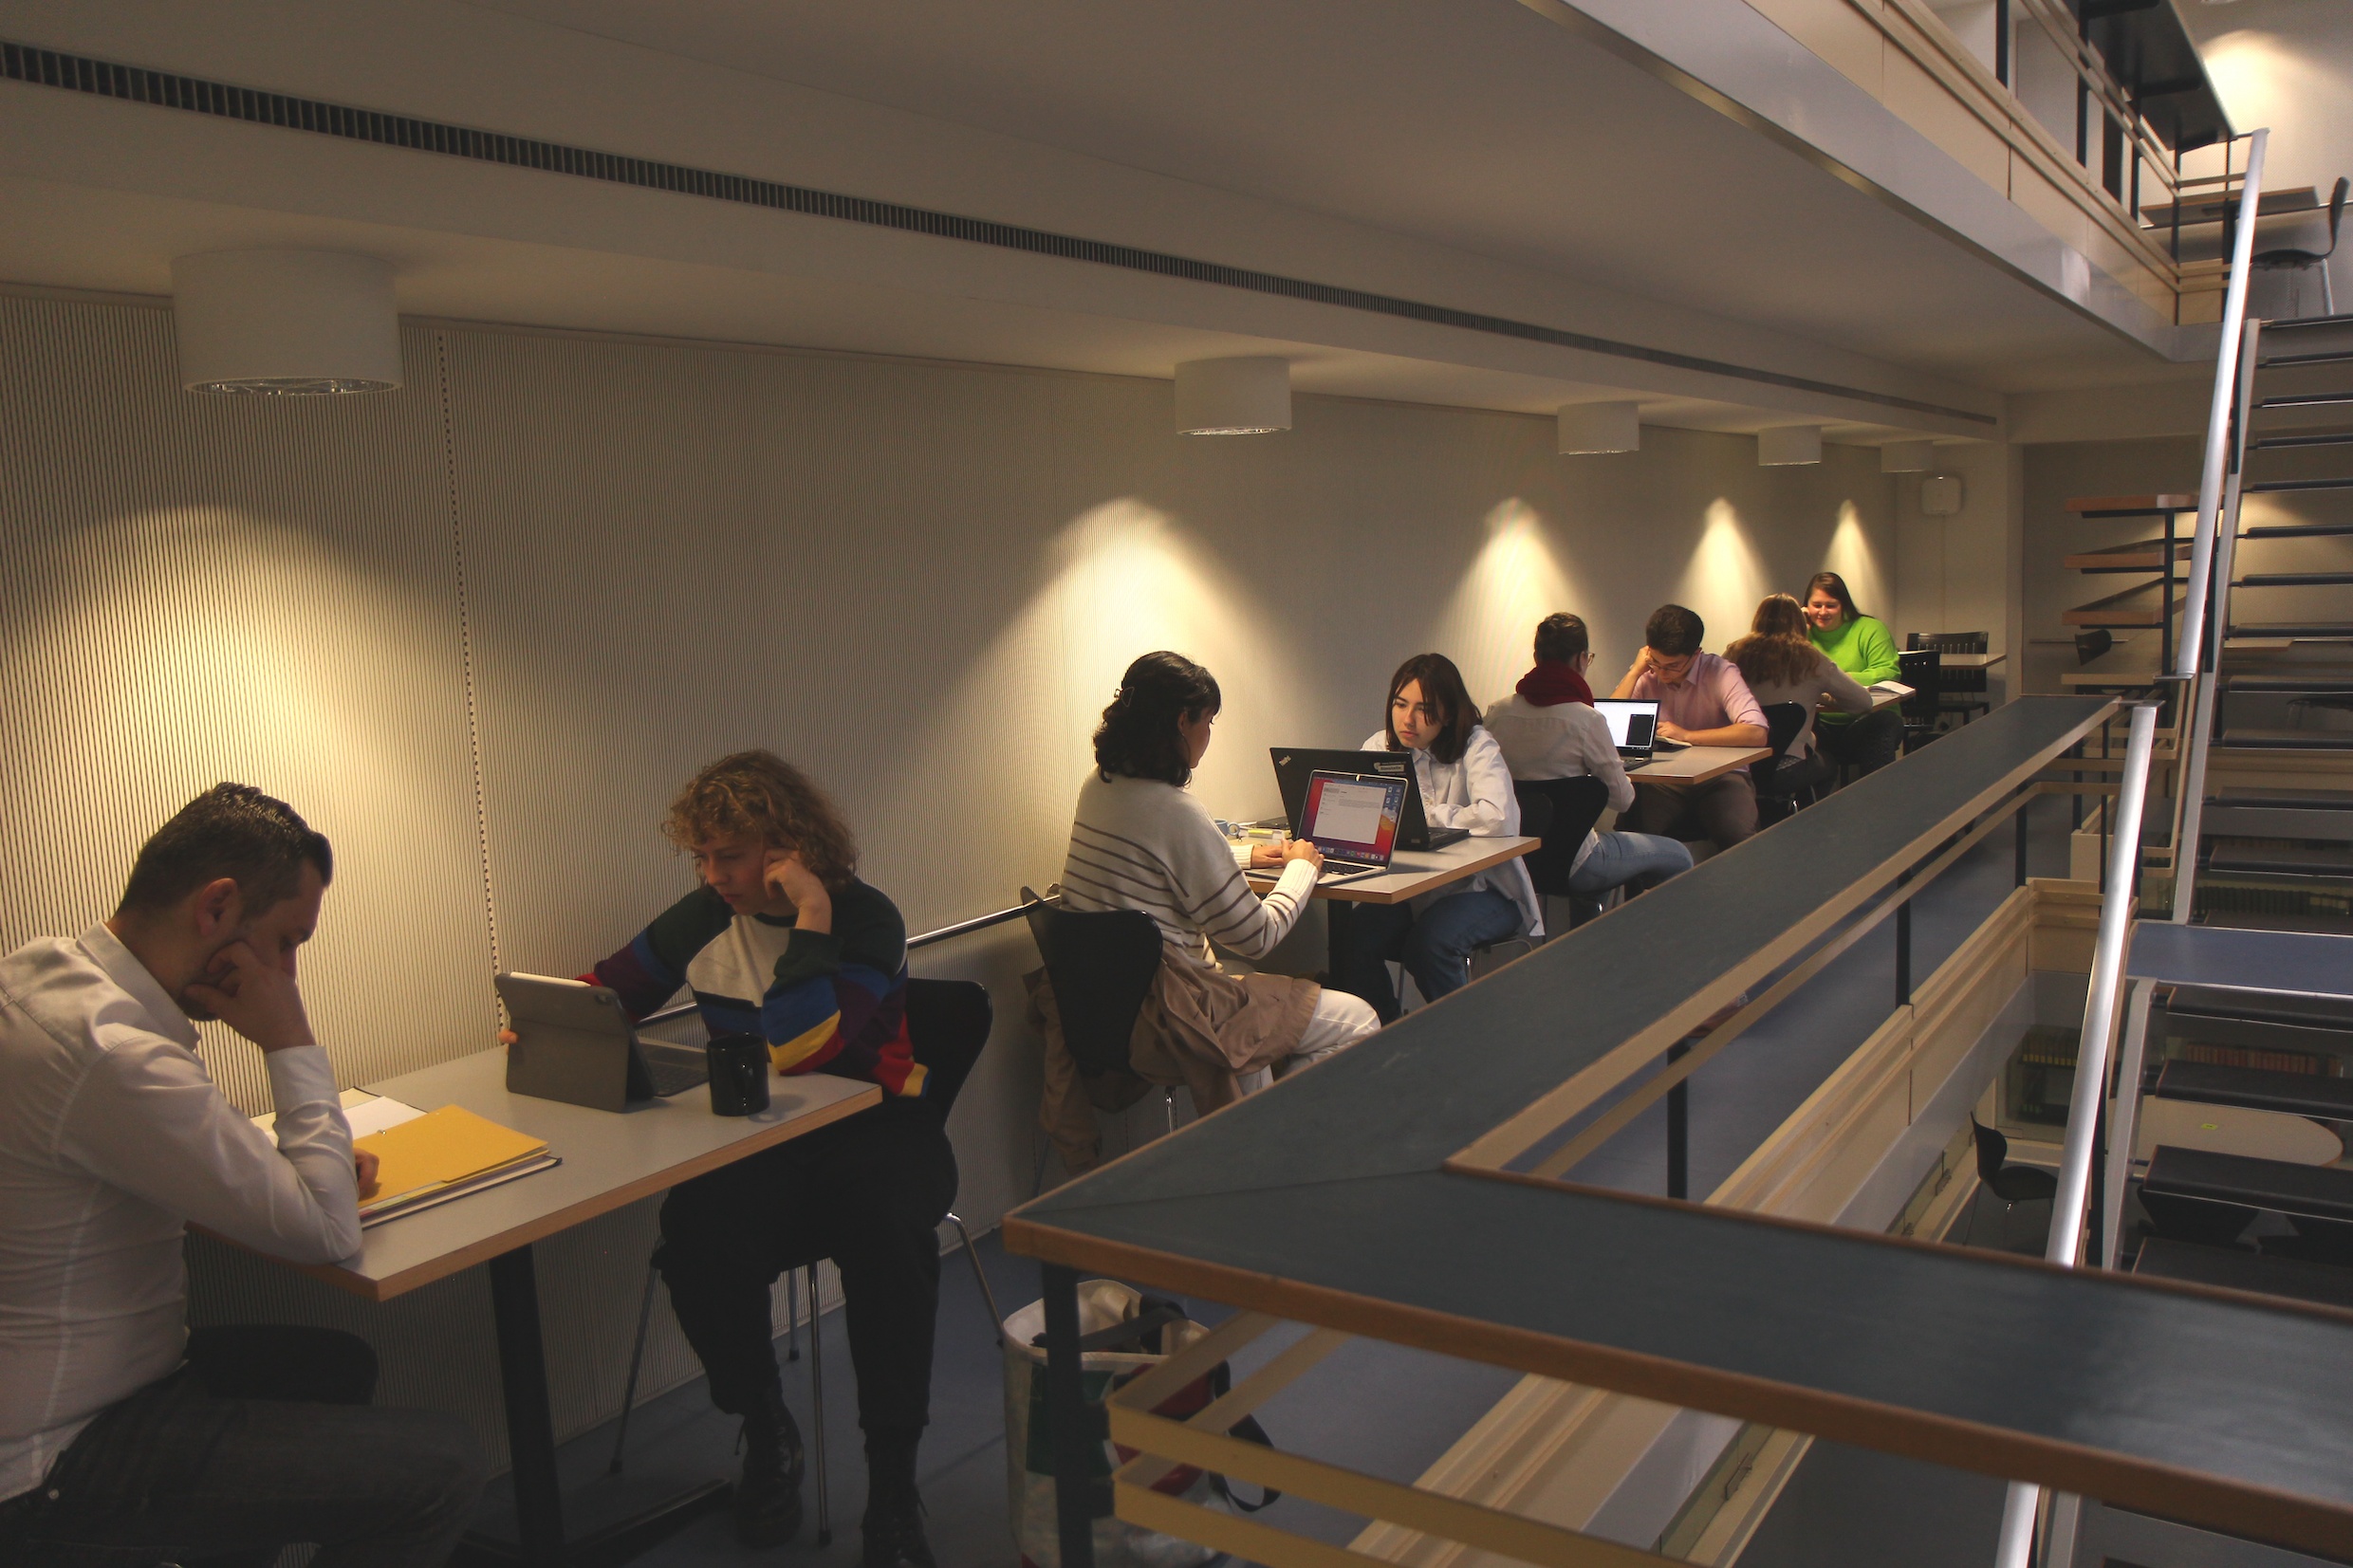 Das Bild zeigt Studierende, die an kleinen Tischen im Lernraum am DS sitzen und konzentriert arbeiten. Es ist eher dunkel, die Arbeitsplätze sind mit hellen Lichtkegeln beleuchtet.